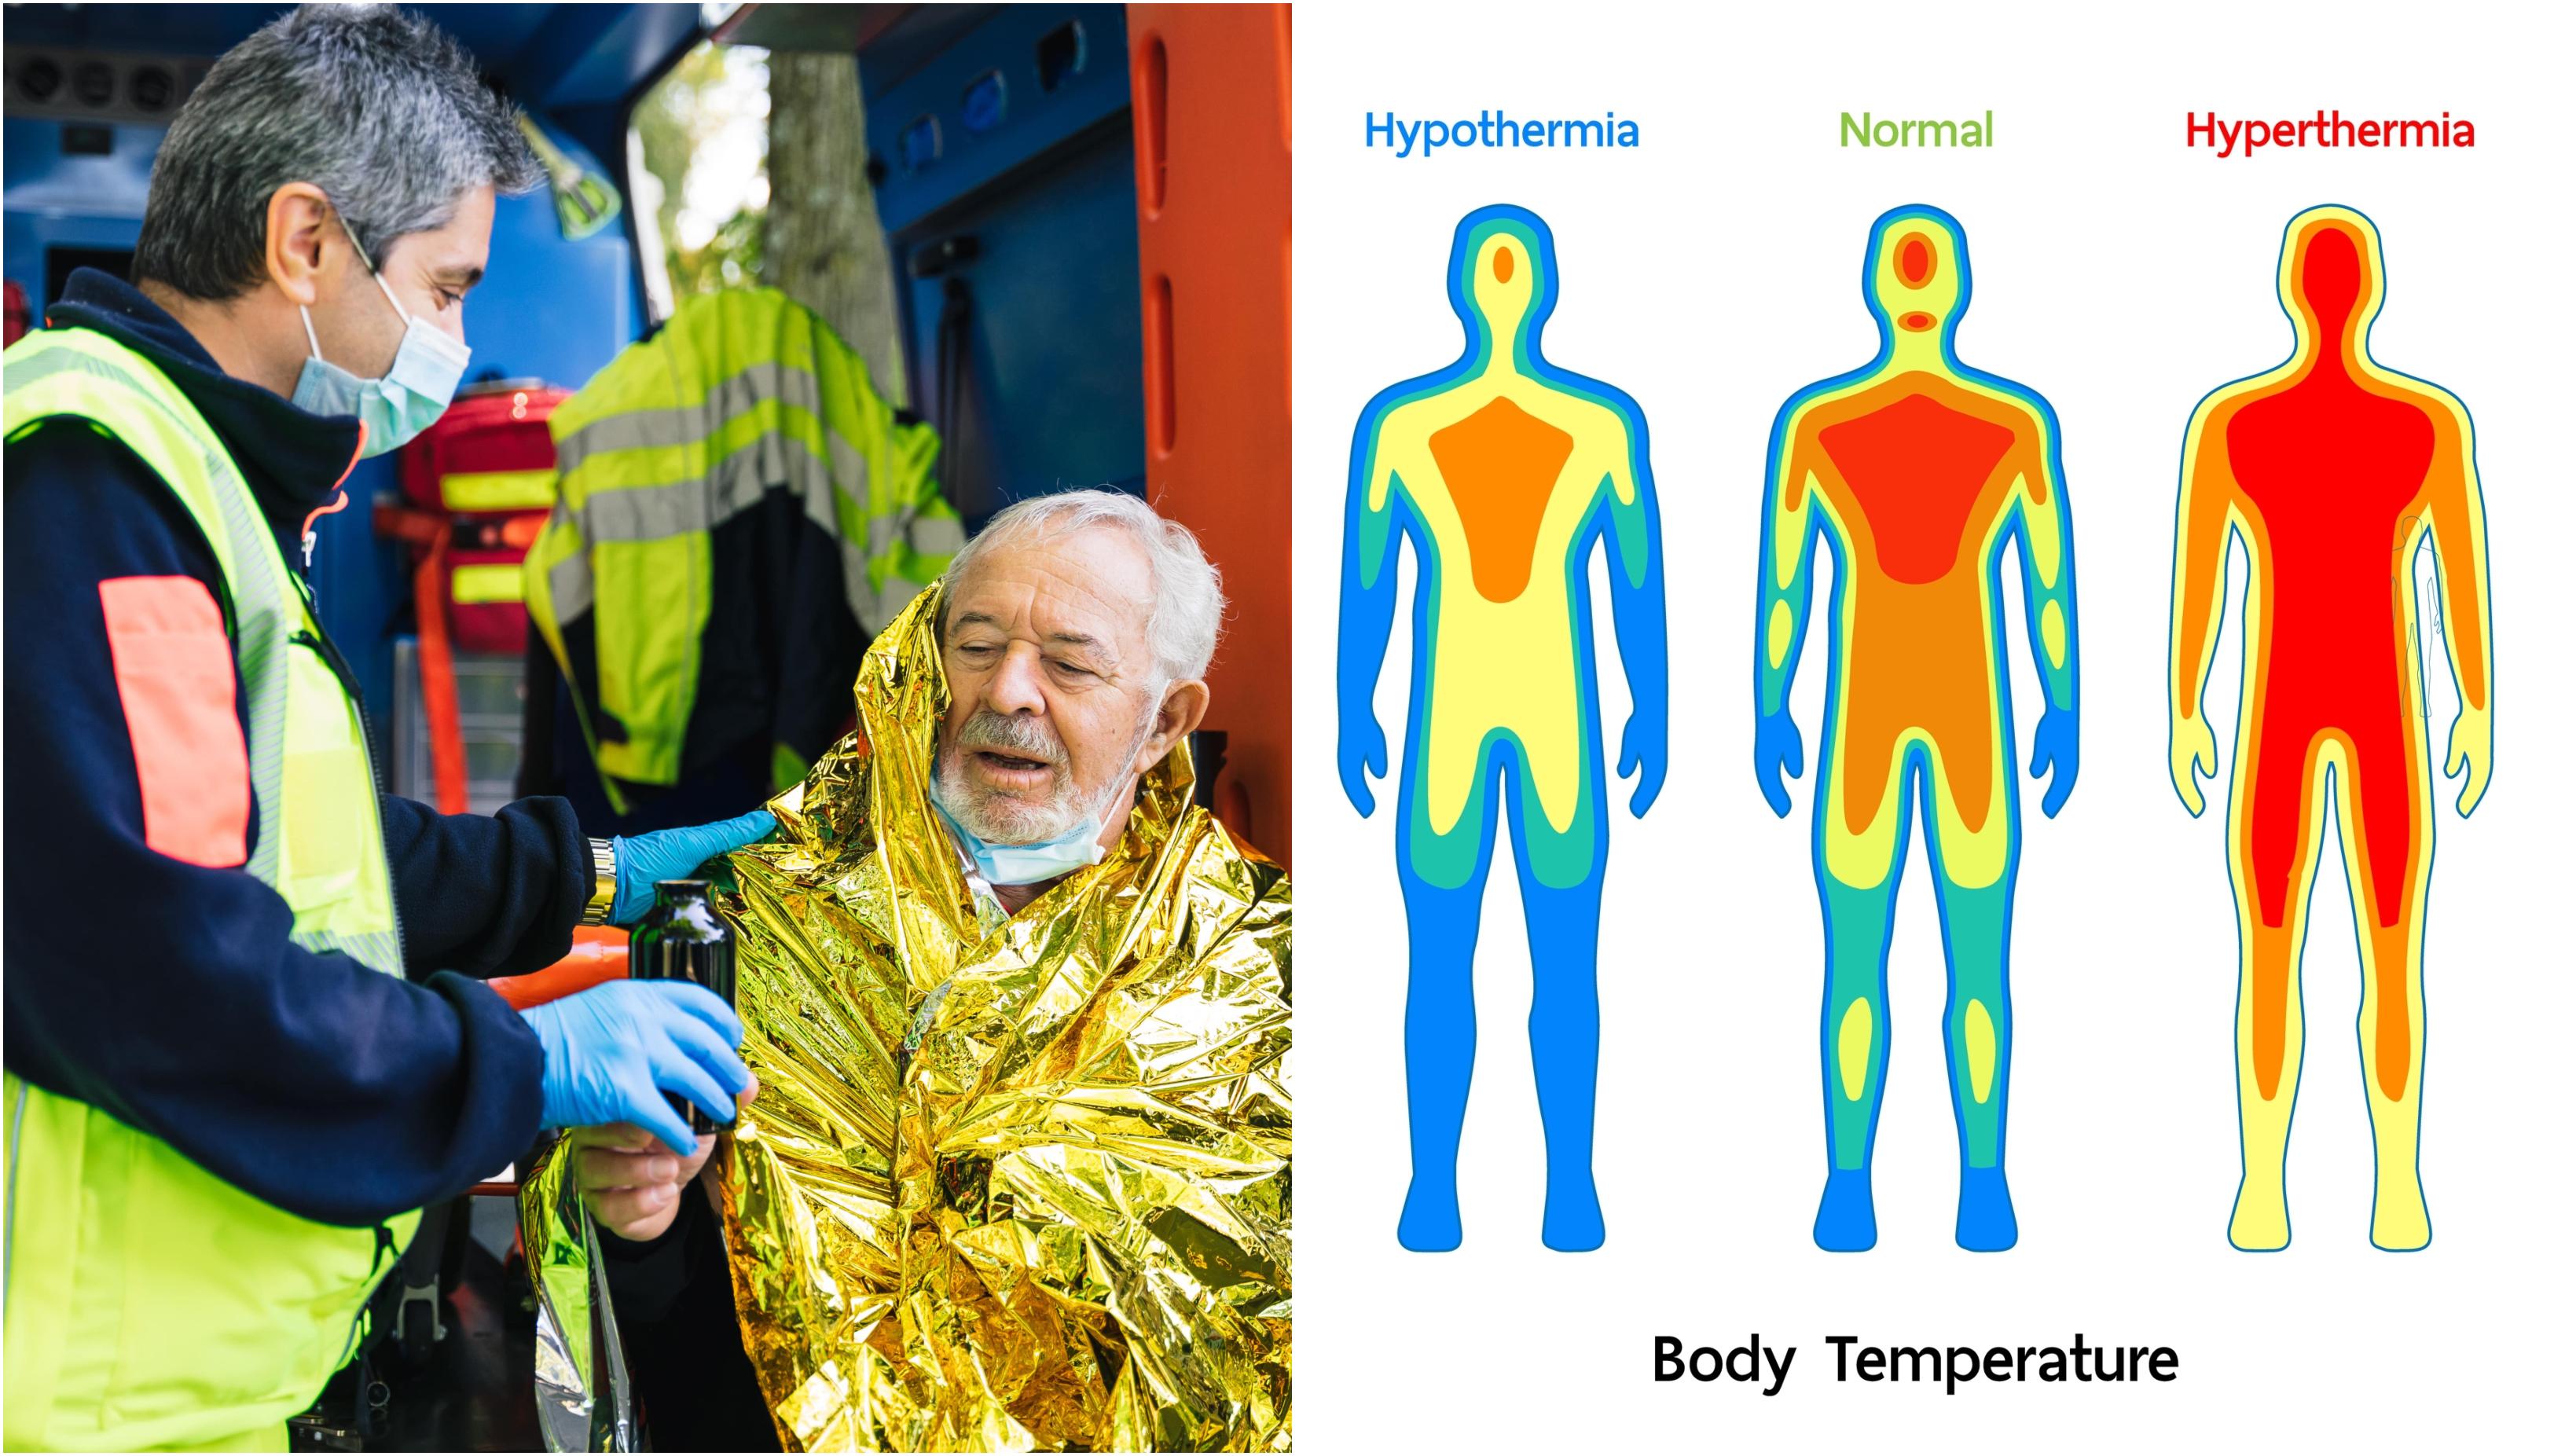 colaj foto cu o persoana care sufera de hipotermie si o poza care arata grafic hipotermia la om